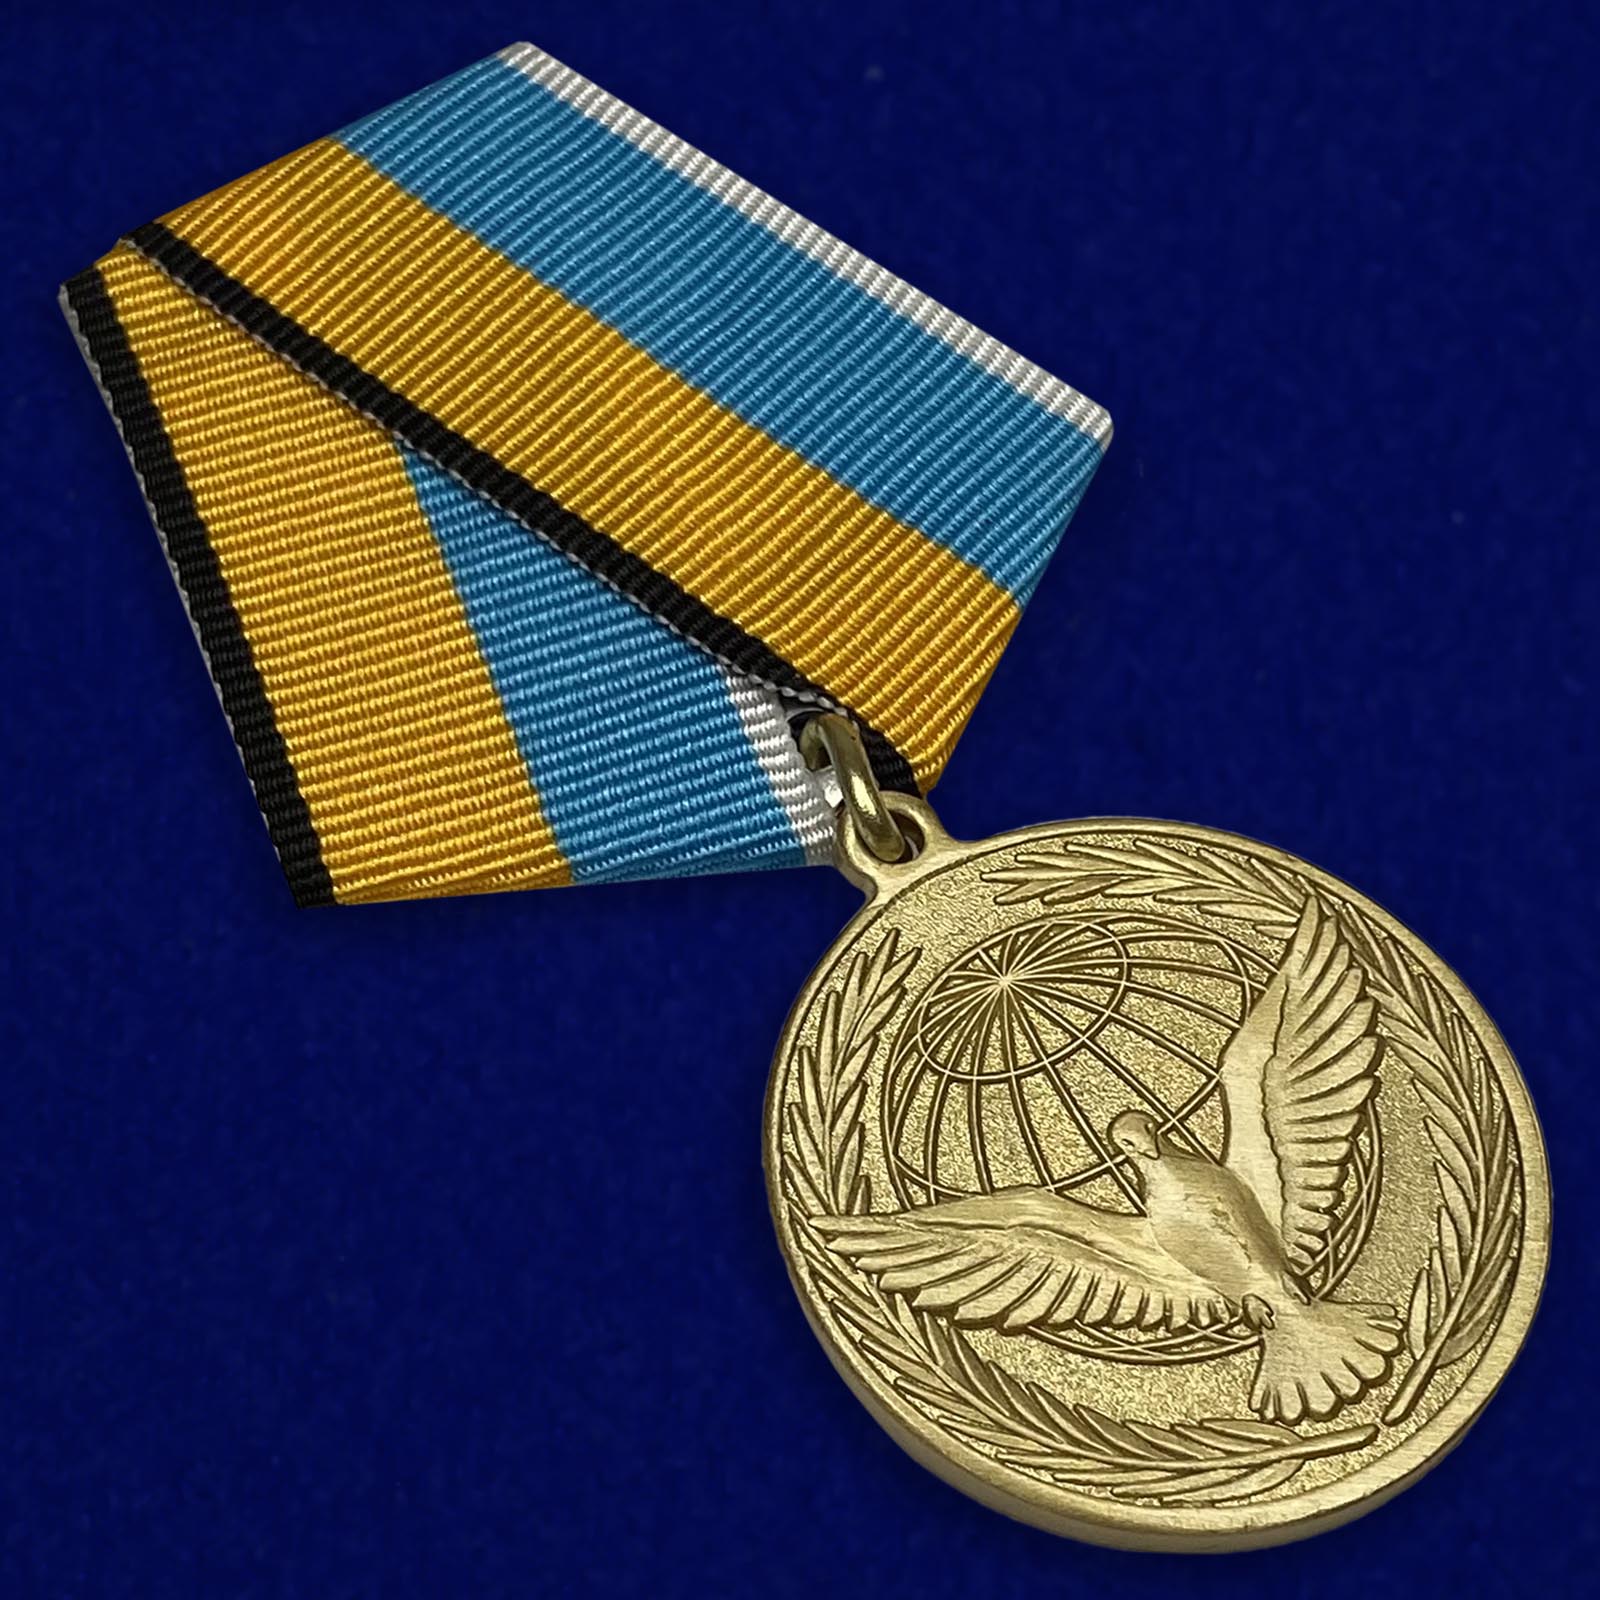 Купить медаль "Участнику миротворческой операции" недорого